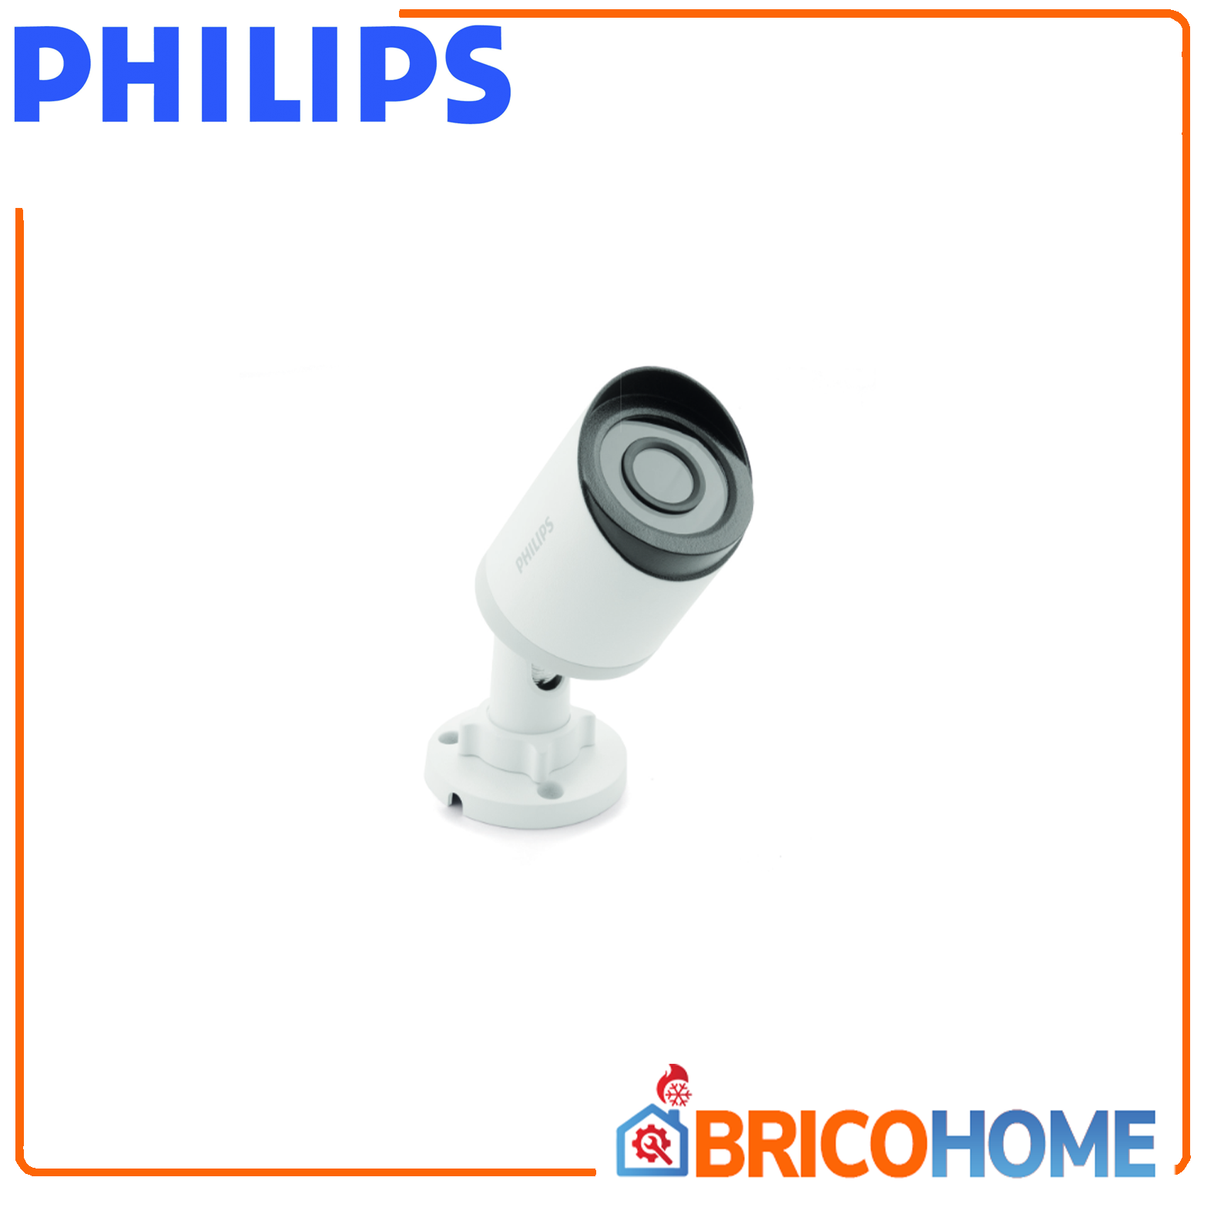 Überwachungskamera für Video-Gegensprechanlagen PHILIPS - DES 9900 CVC